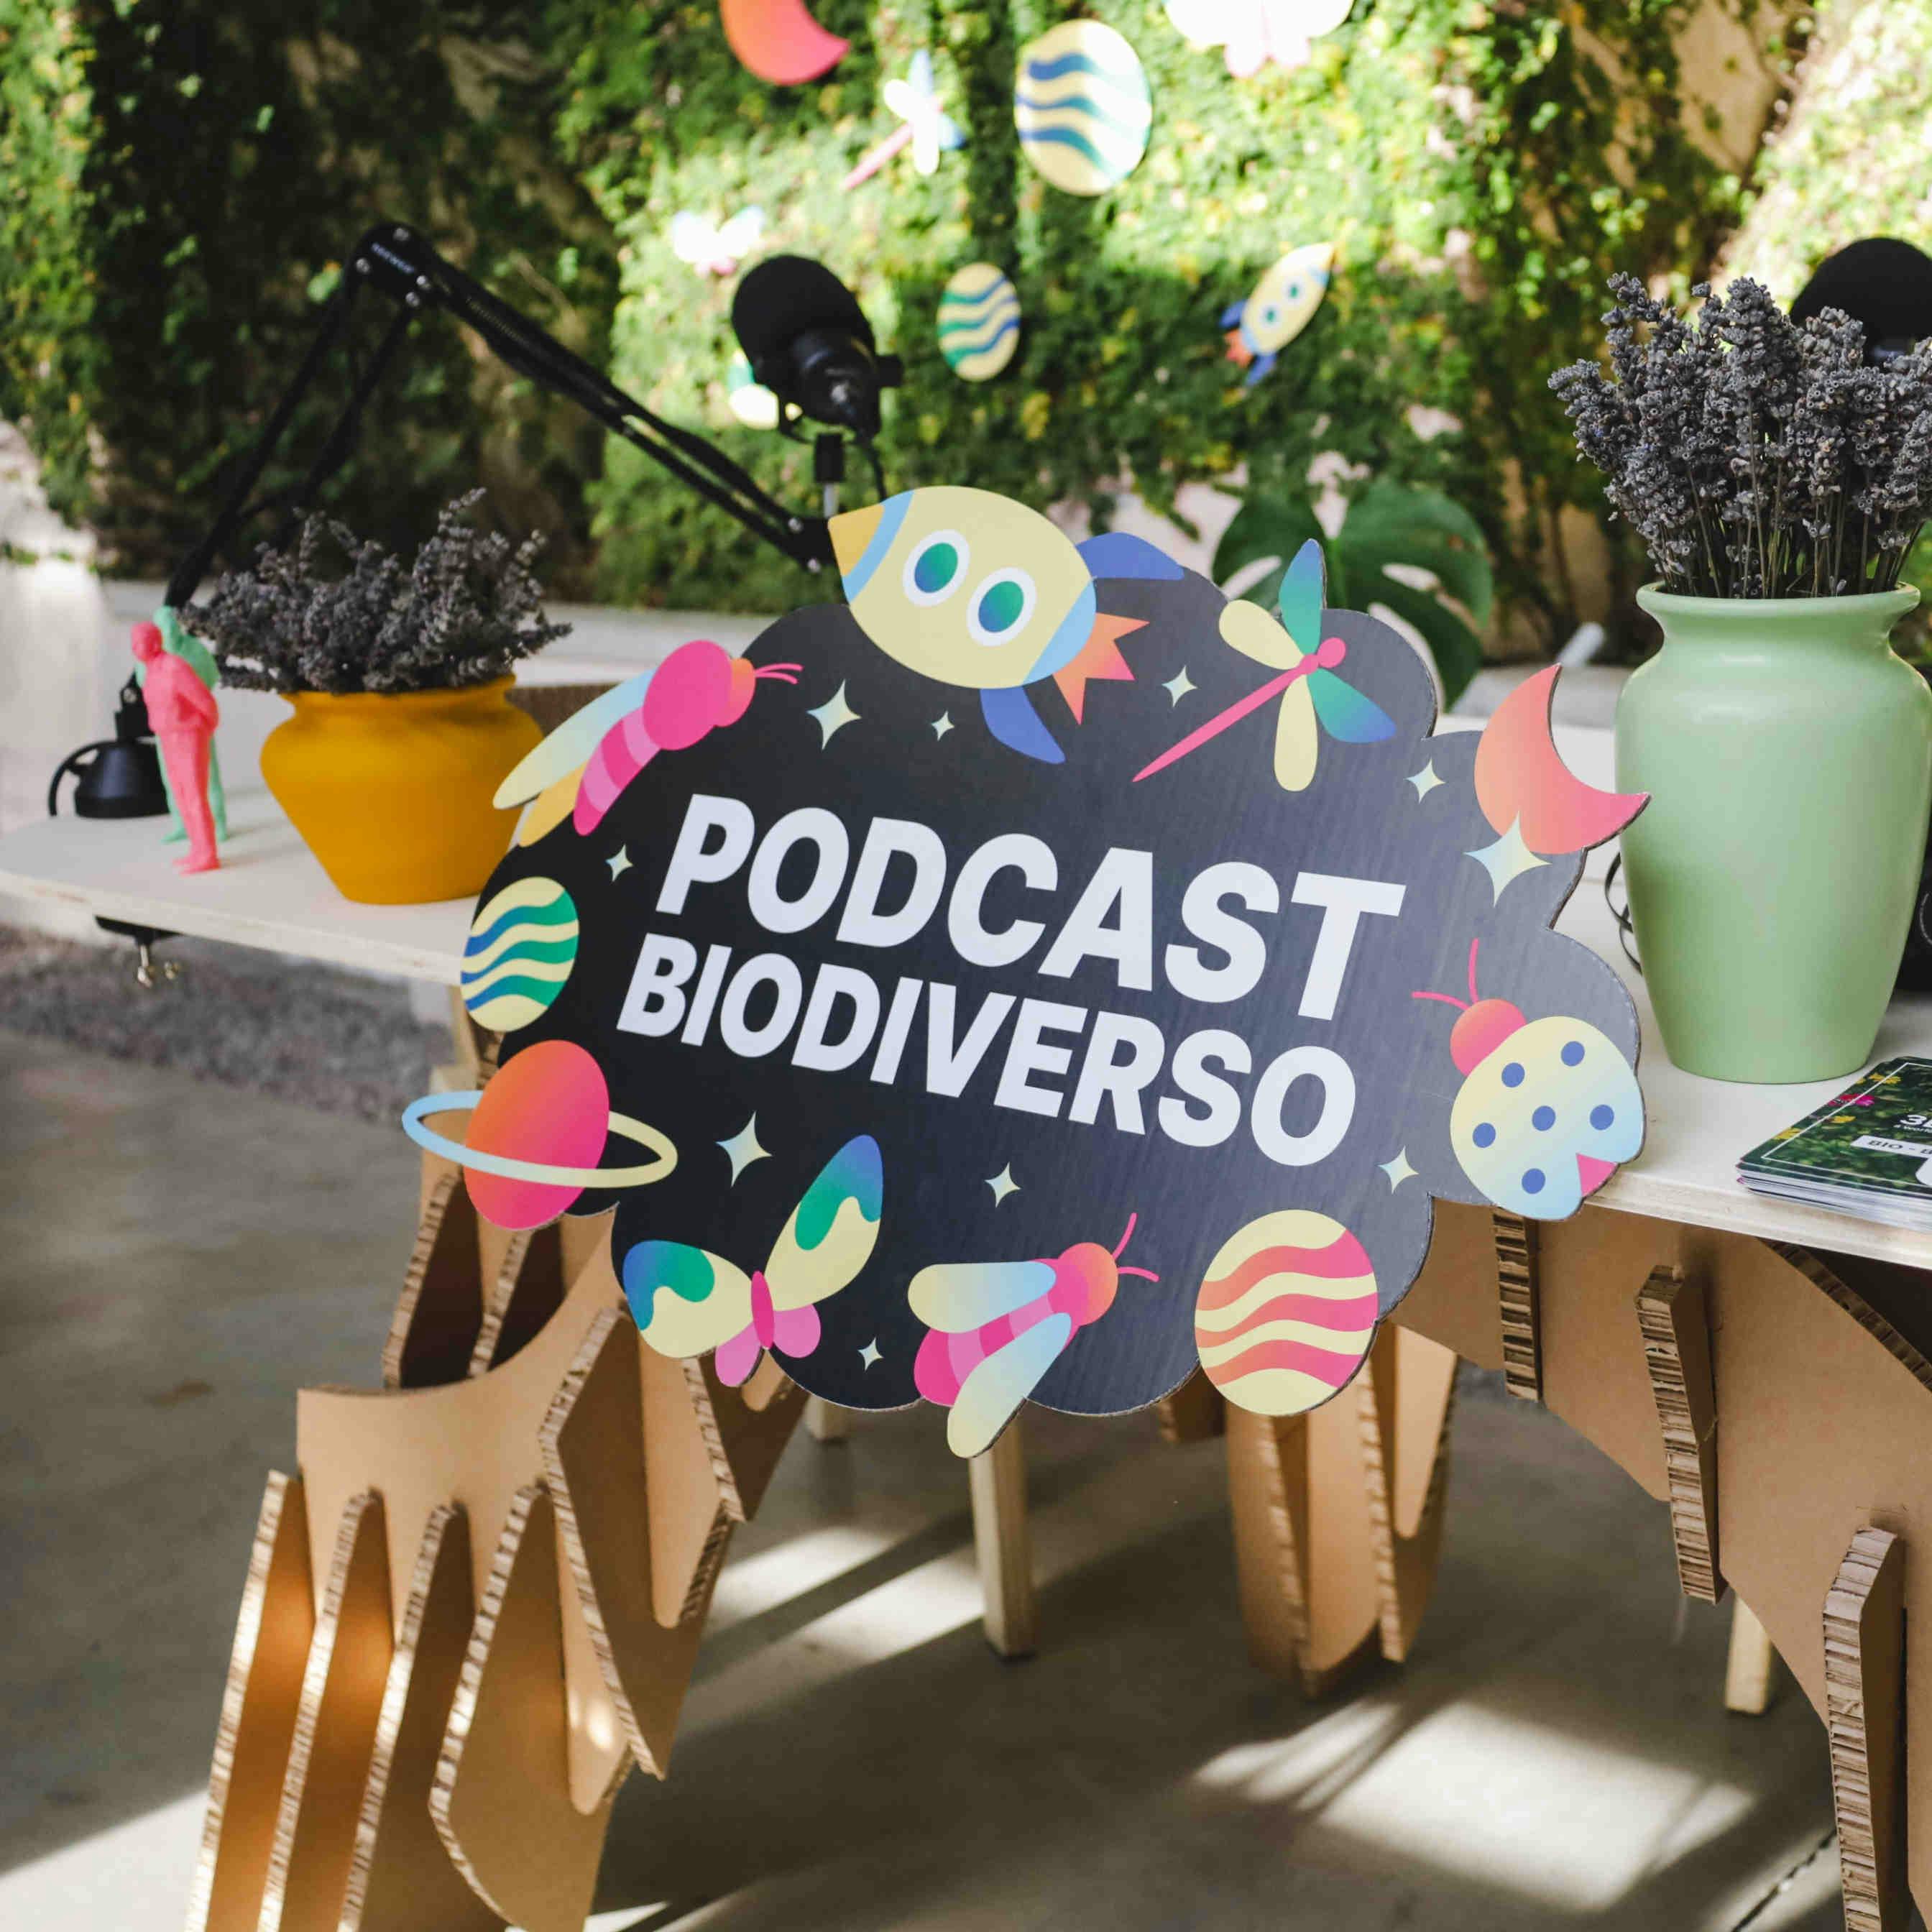 Podcast Biodiverso: episodios e invitados